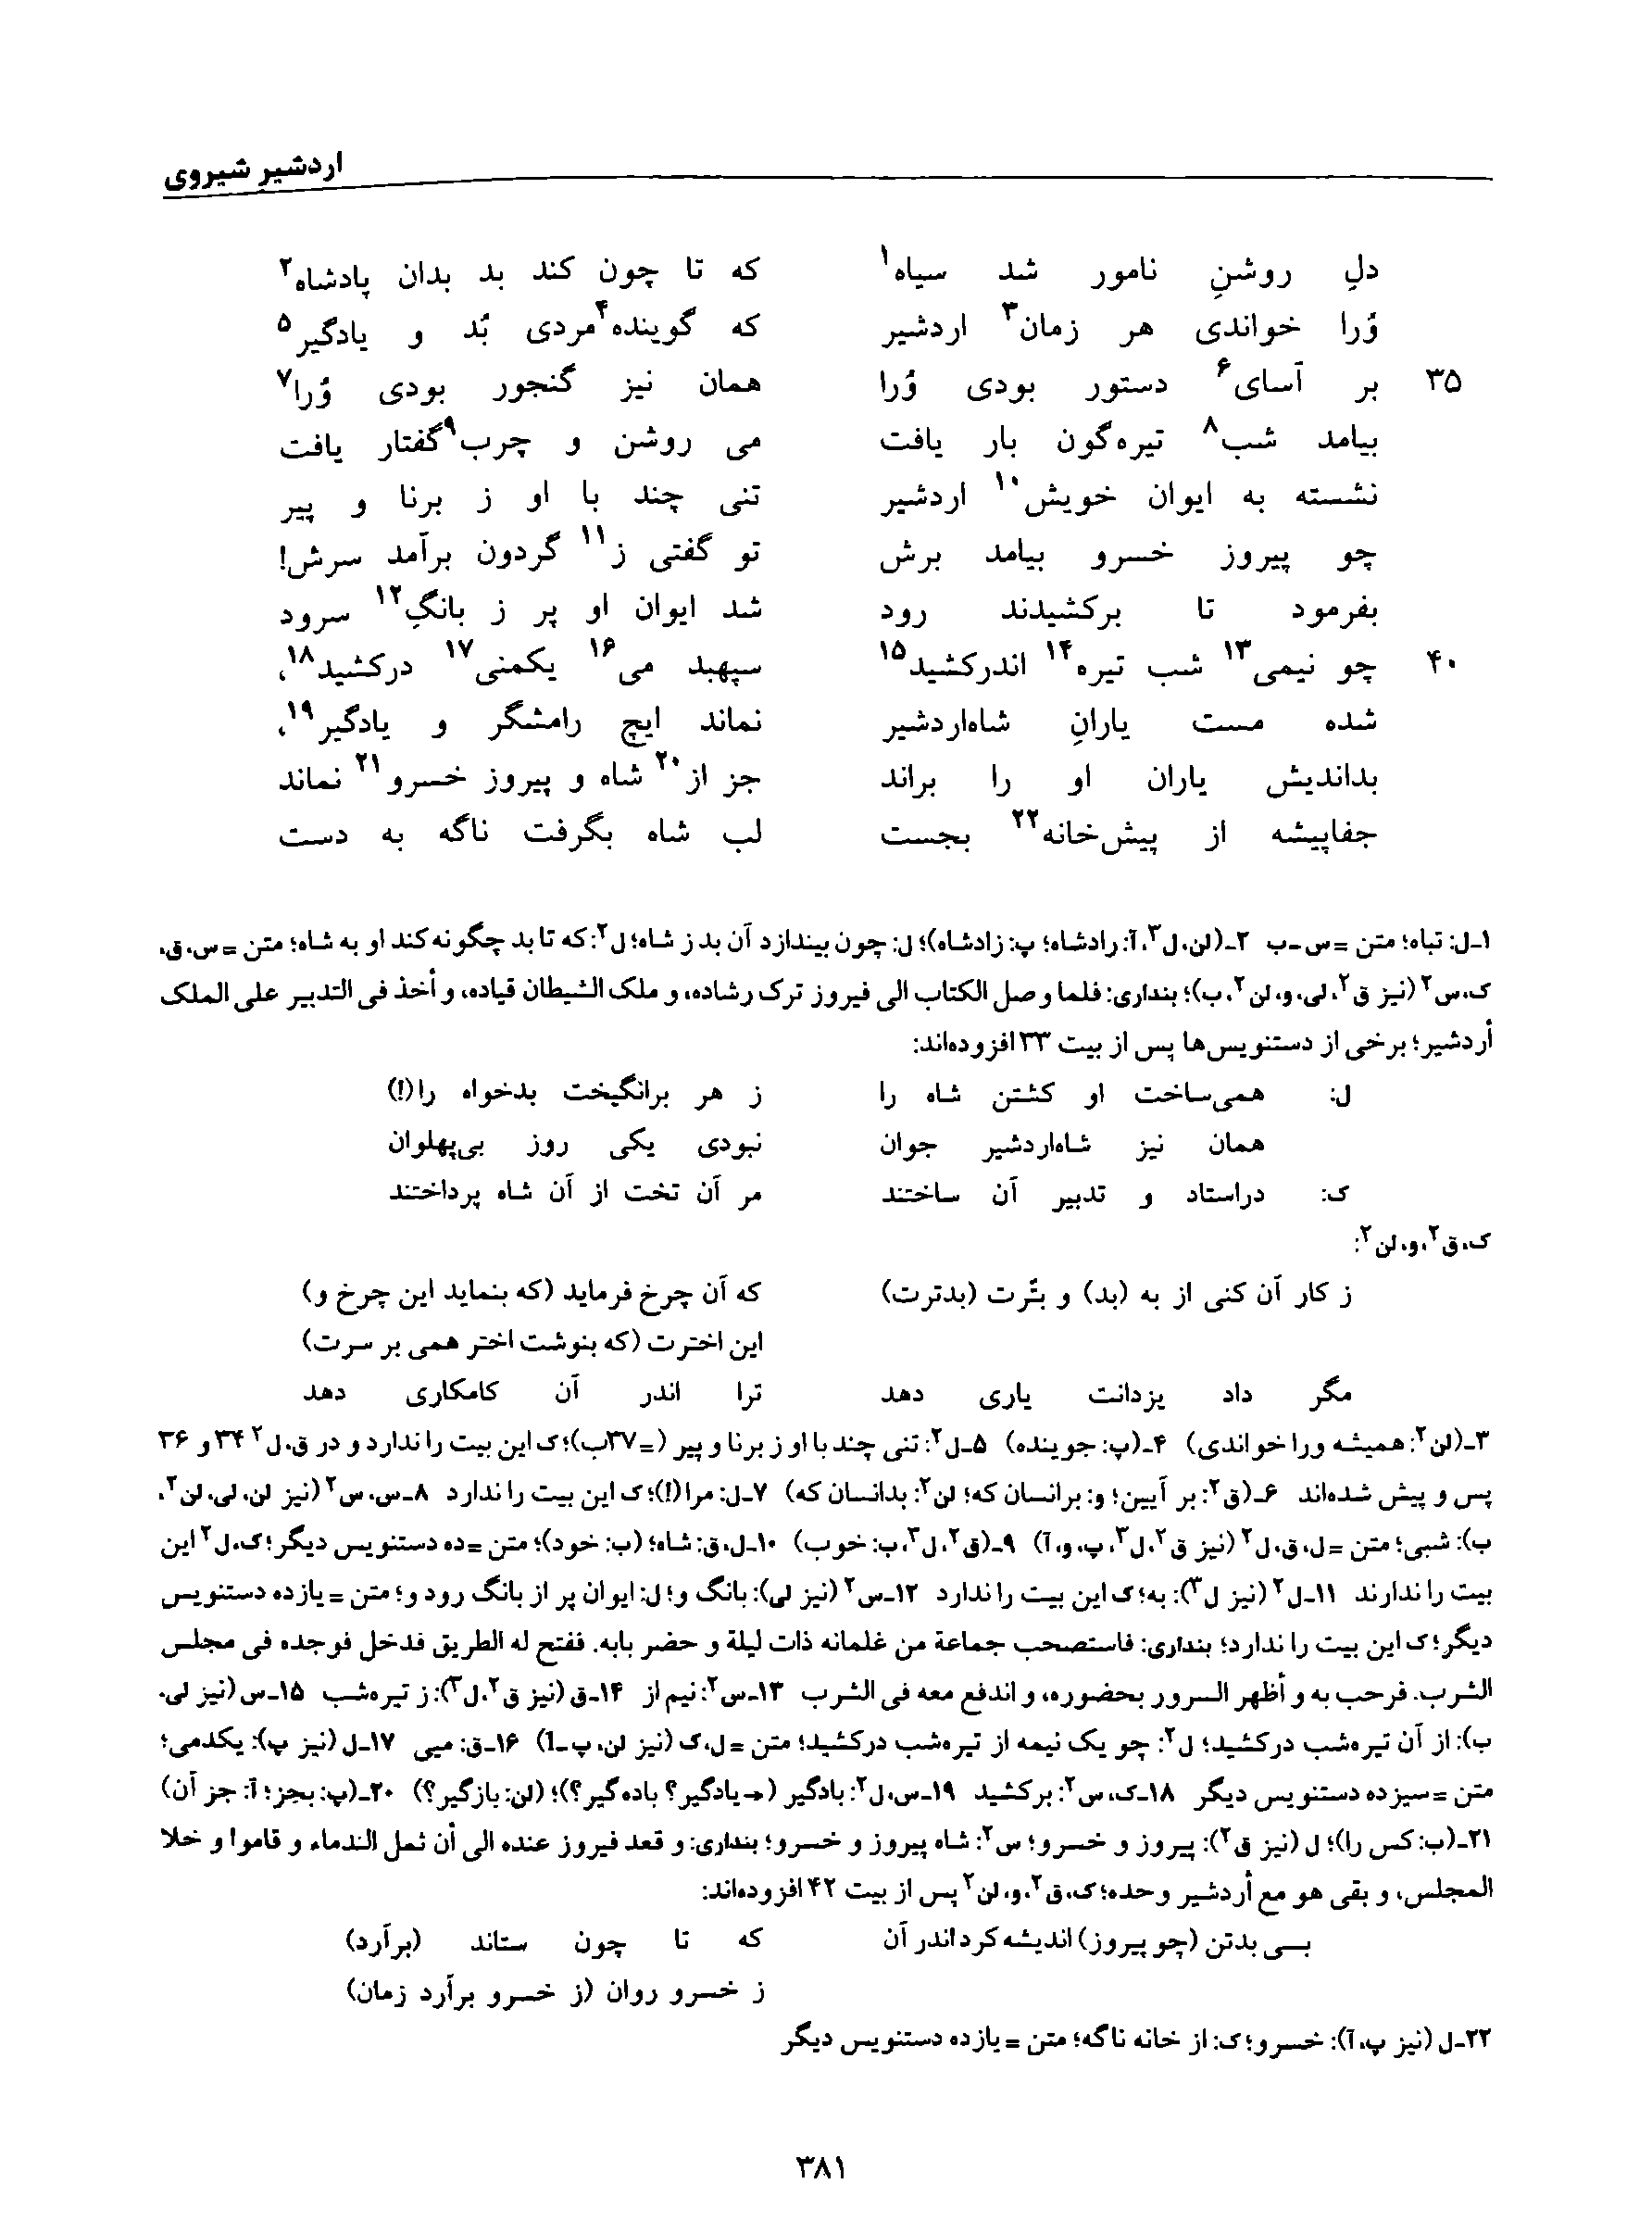 vol. 8, p. 381